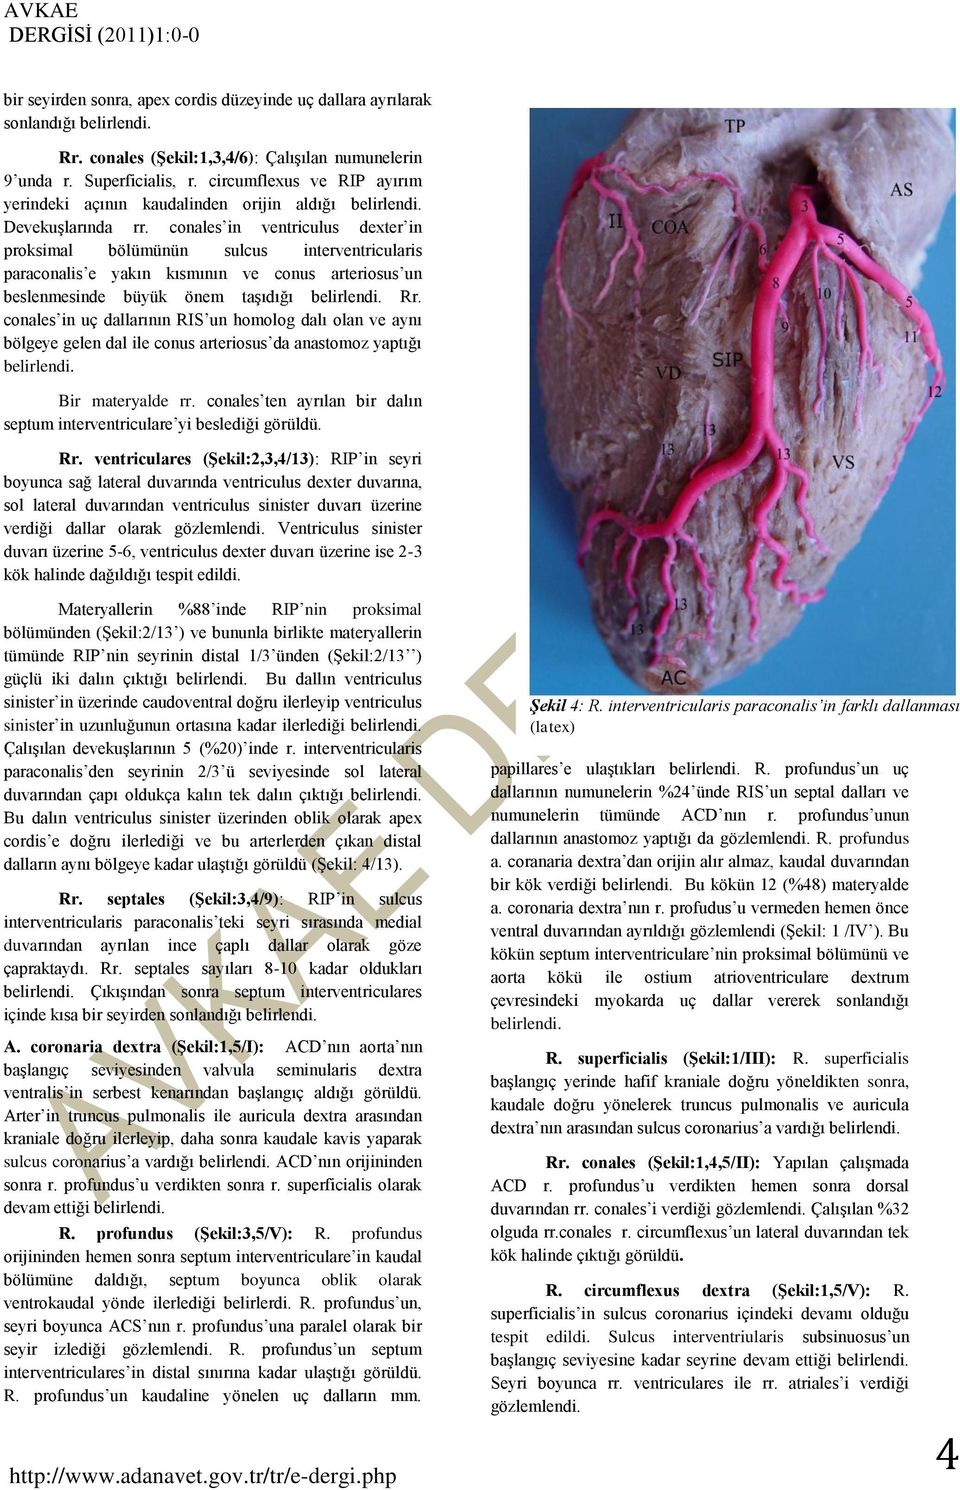 conales in ventriculus dexter in proksimal bölümünün sulcus interventricularis paraconalis e yakın kısmının ve conus arteriosus un beslenmesinde büyük önem taşıdığı belirlendi. Rr.